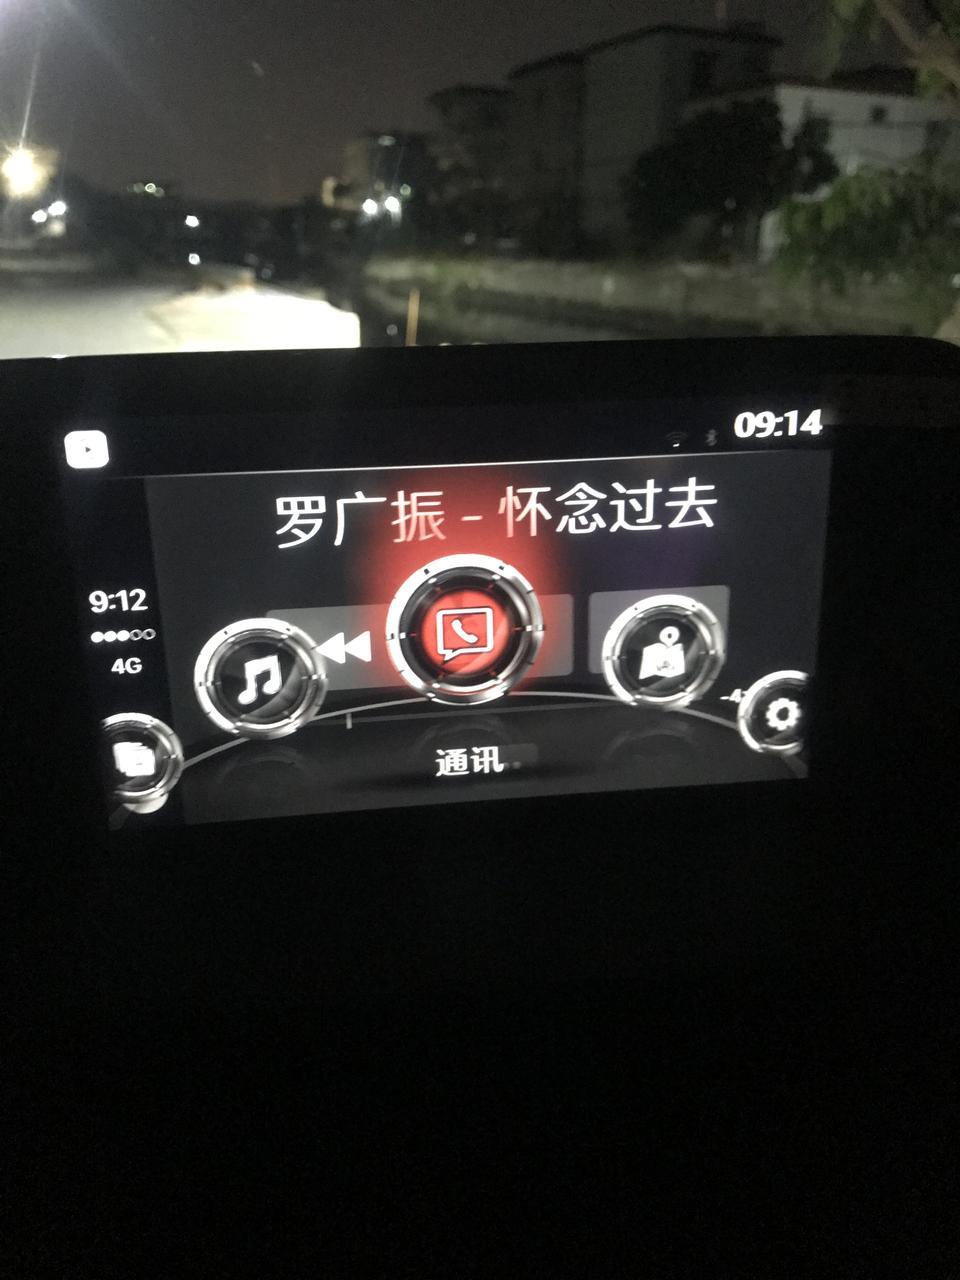 马自达cx5 CX-5 2020款用苹果手机线链接到车上听着听着歌就会卡死了，已经很多次了。你们有没有出现过同样的问题，这要怎么处理